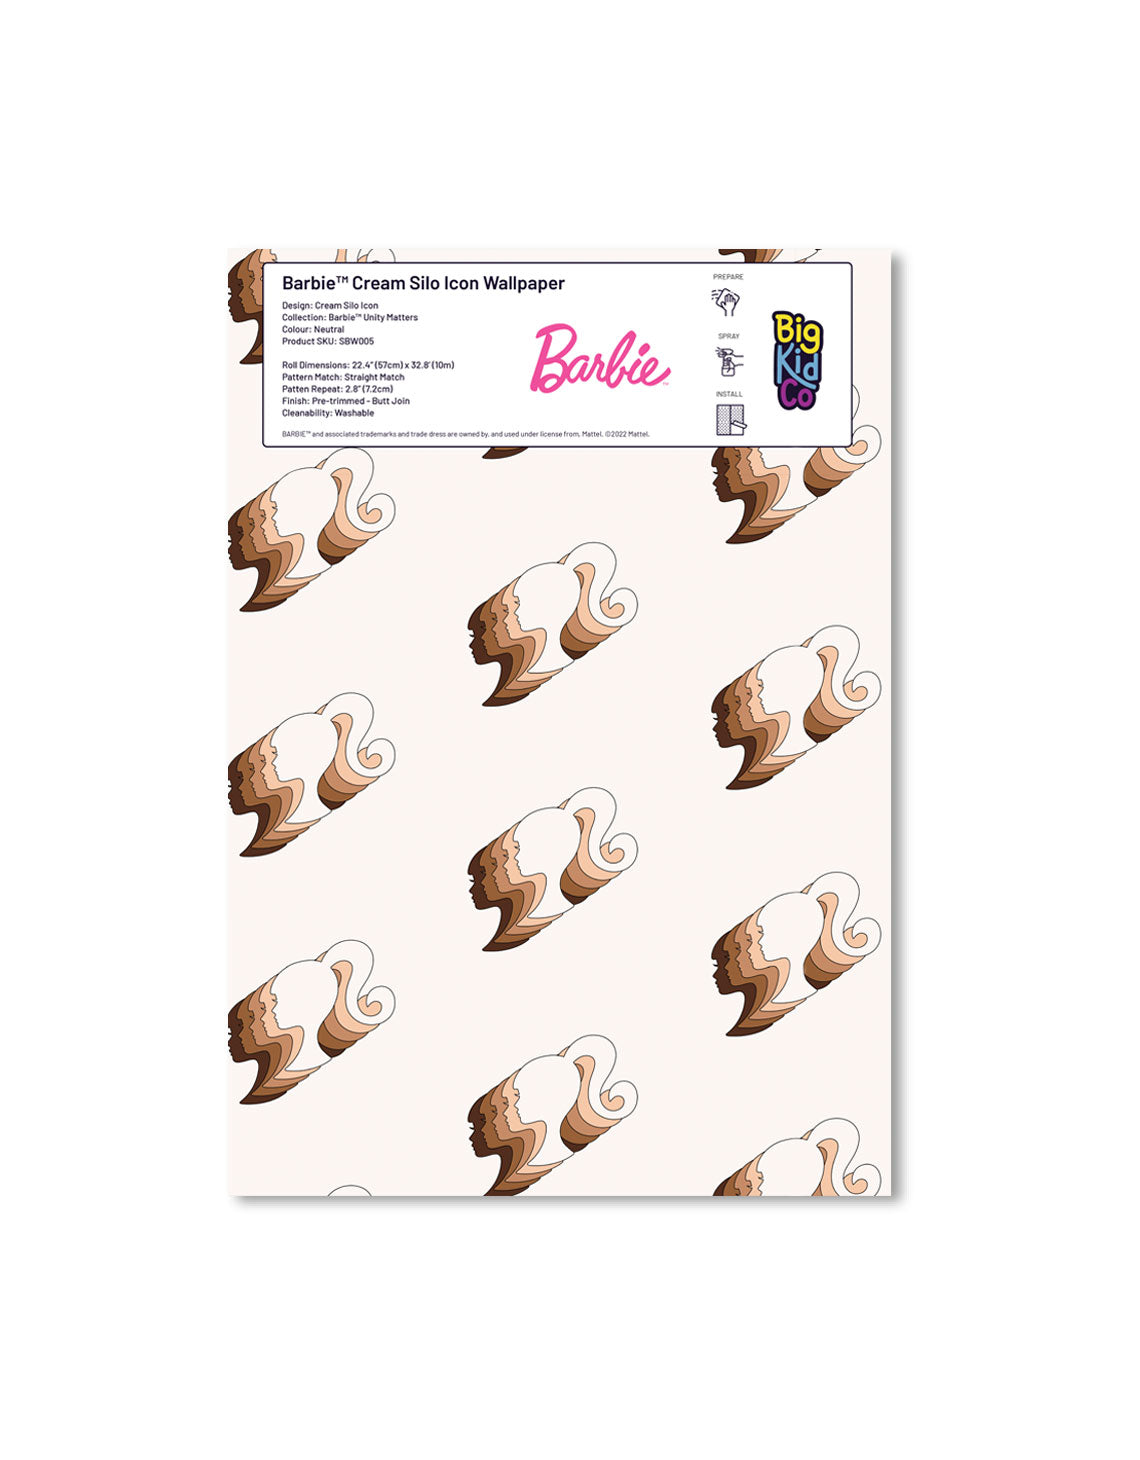 Barbie Cream Silhouette Icon Wallpaper